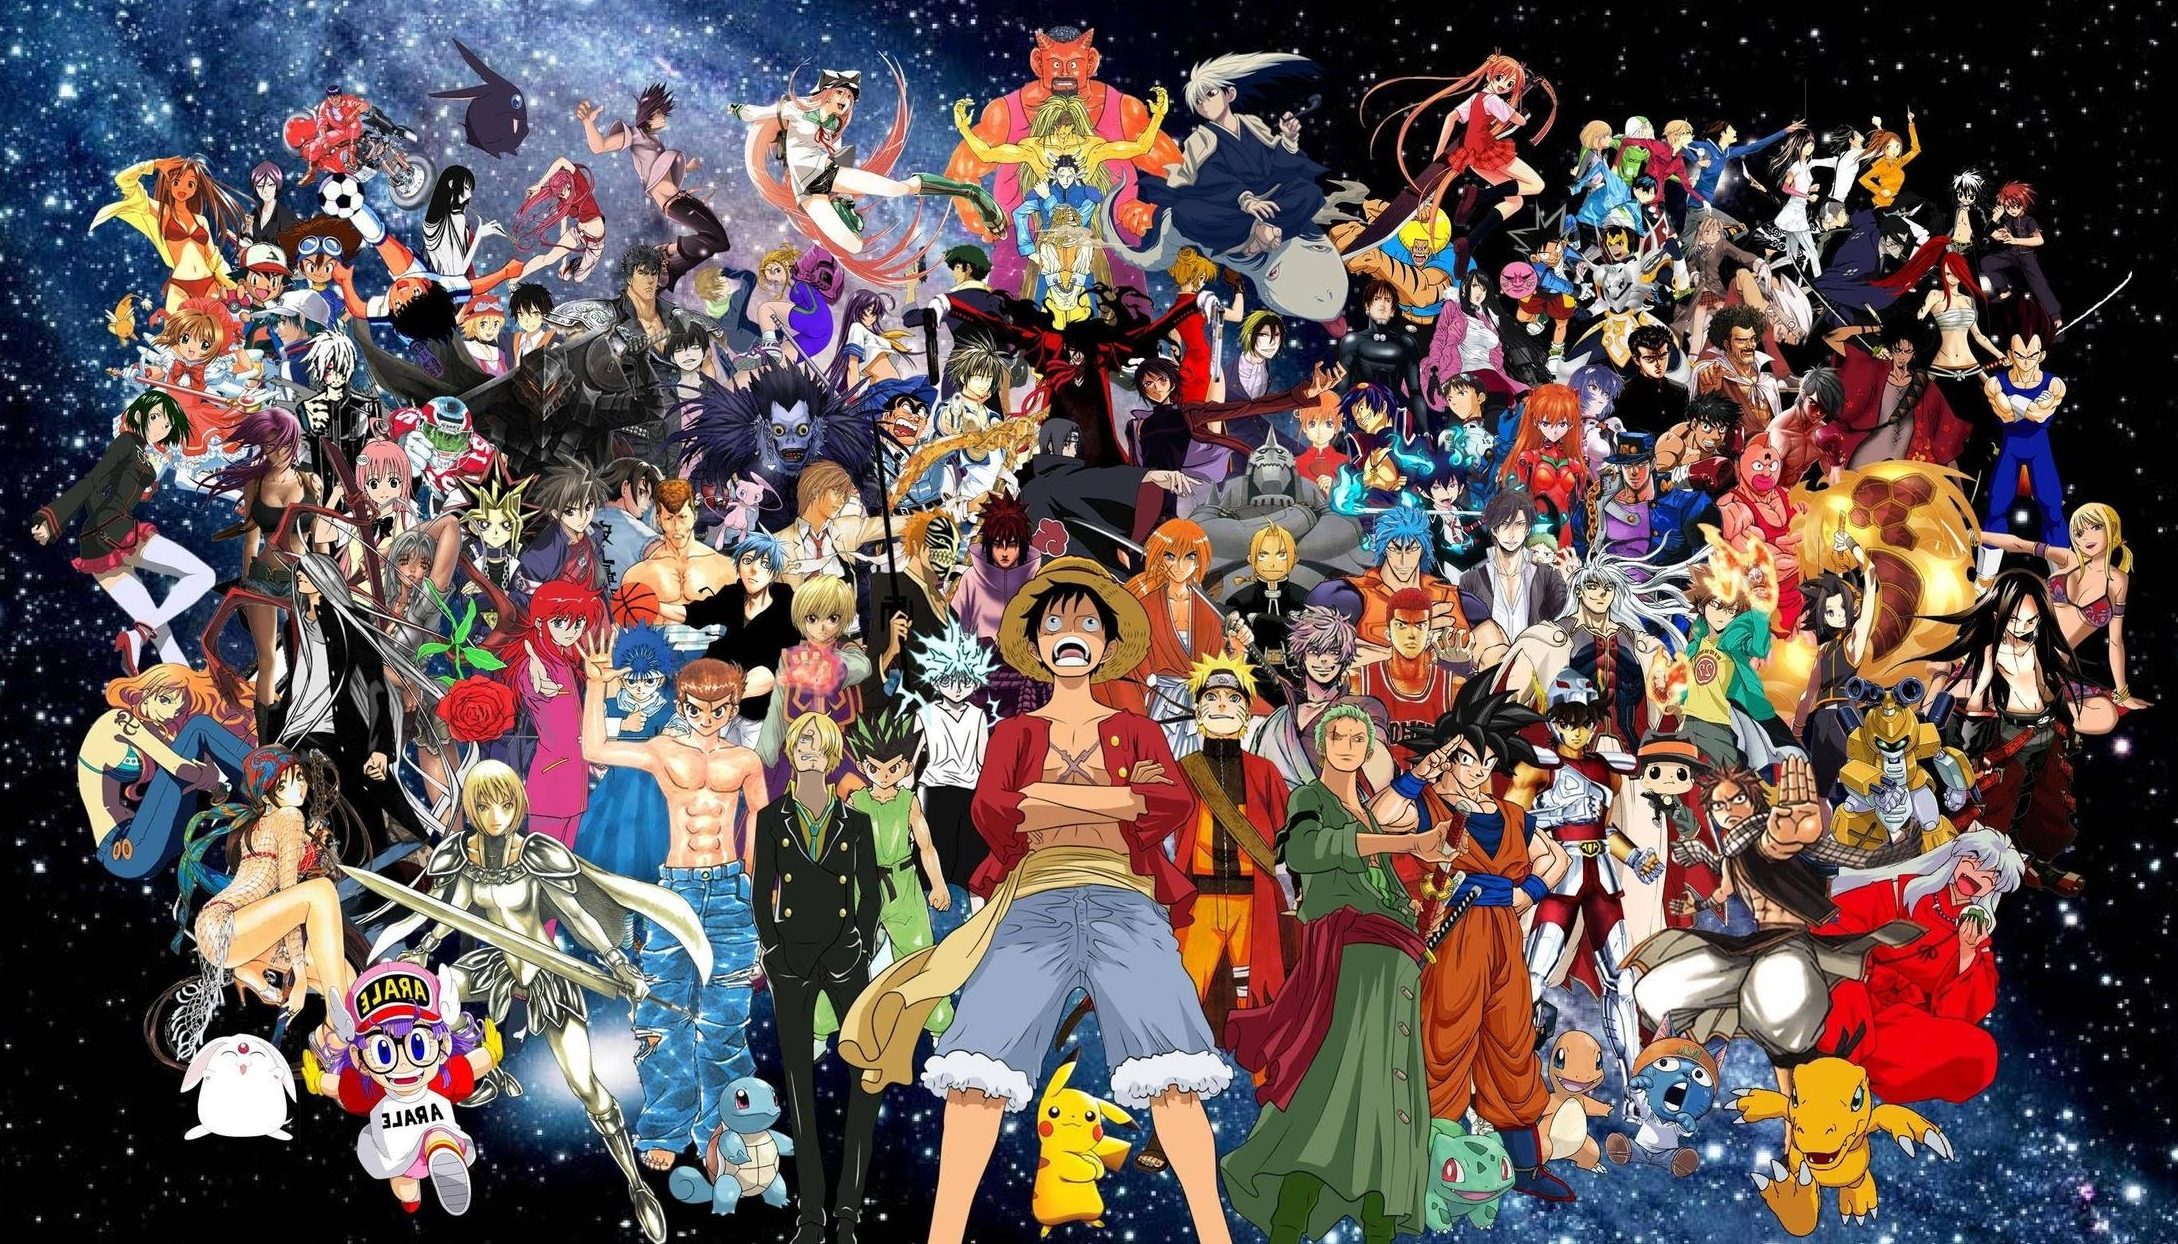 tous les personnages d'anime fond d'écran,gens,foule,art,un événement,carnaval